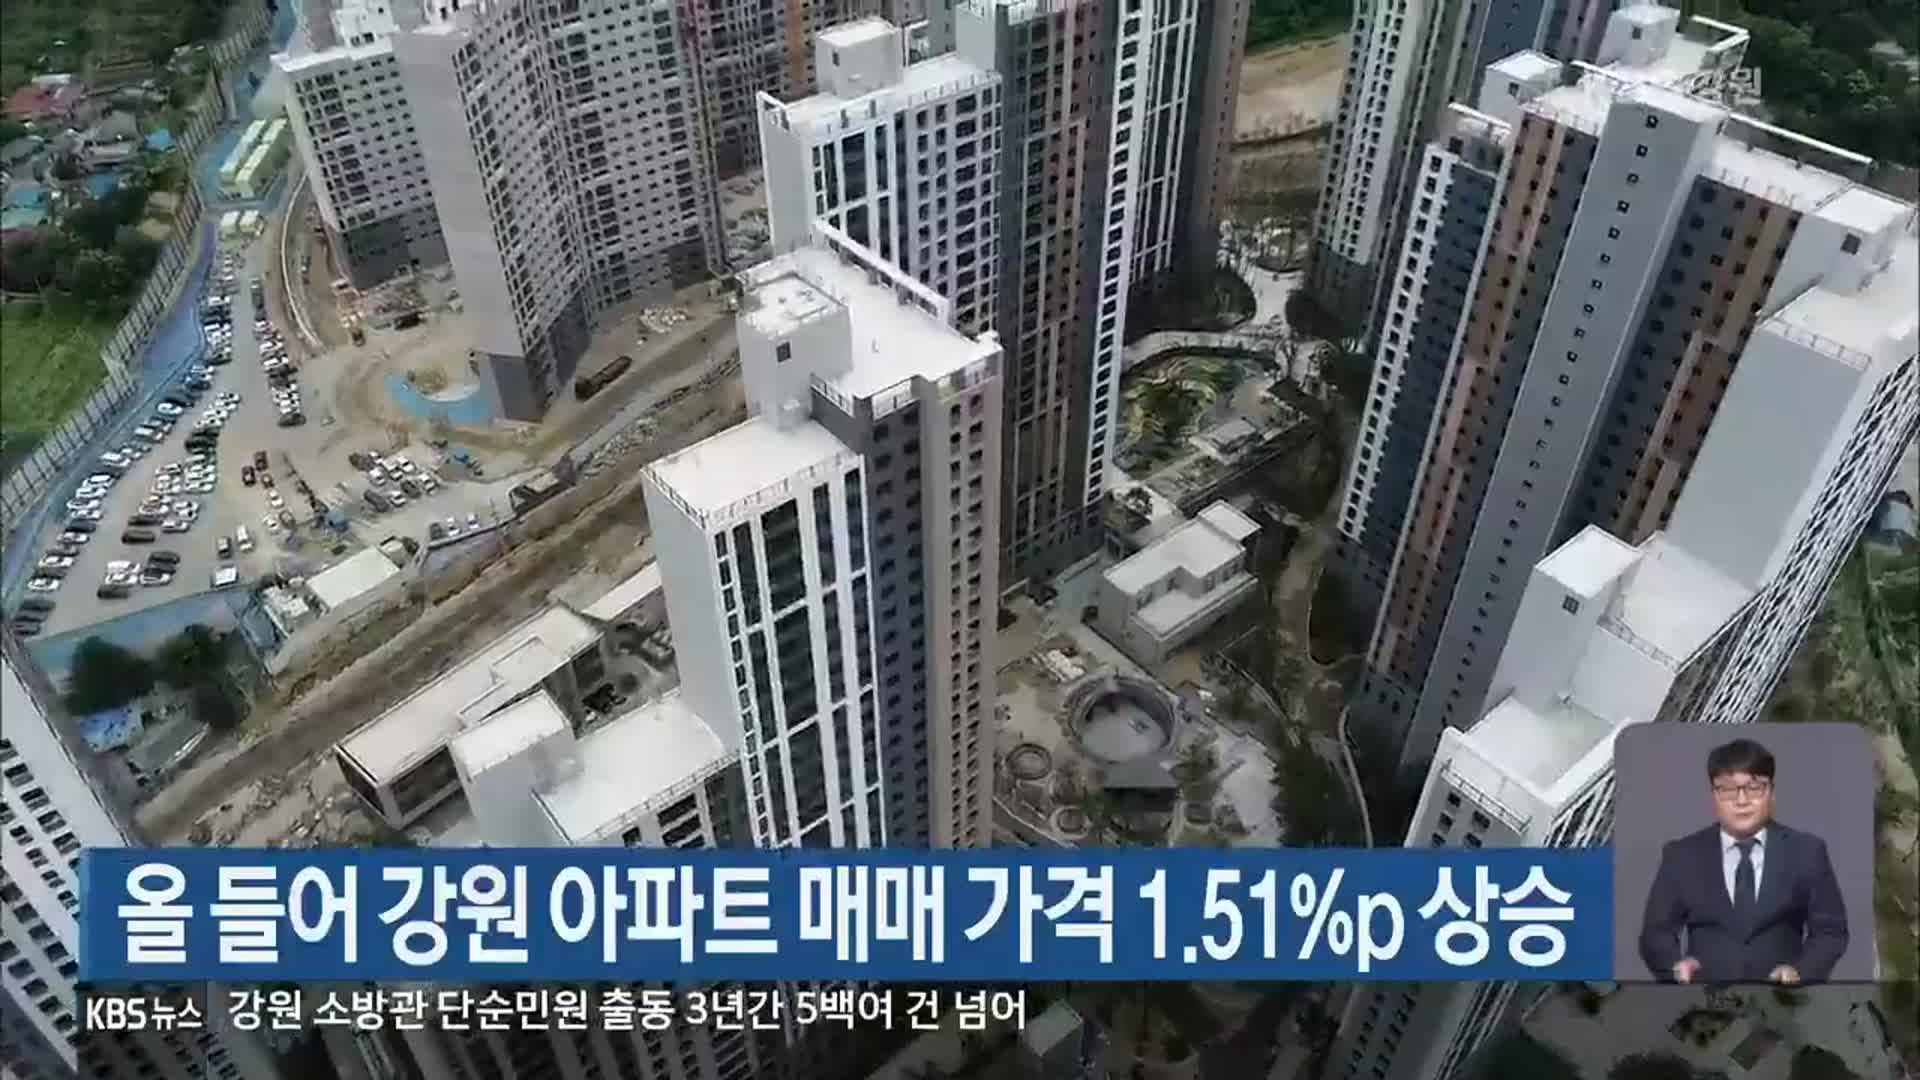 올 들어 강원 아파트 매매 가격 1.51%p 상승